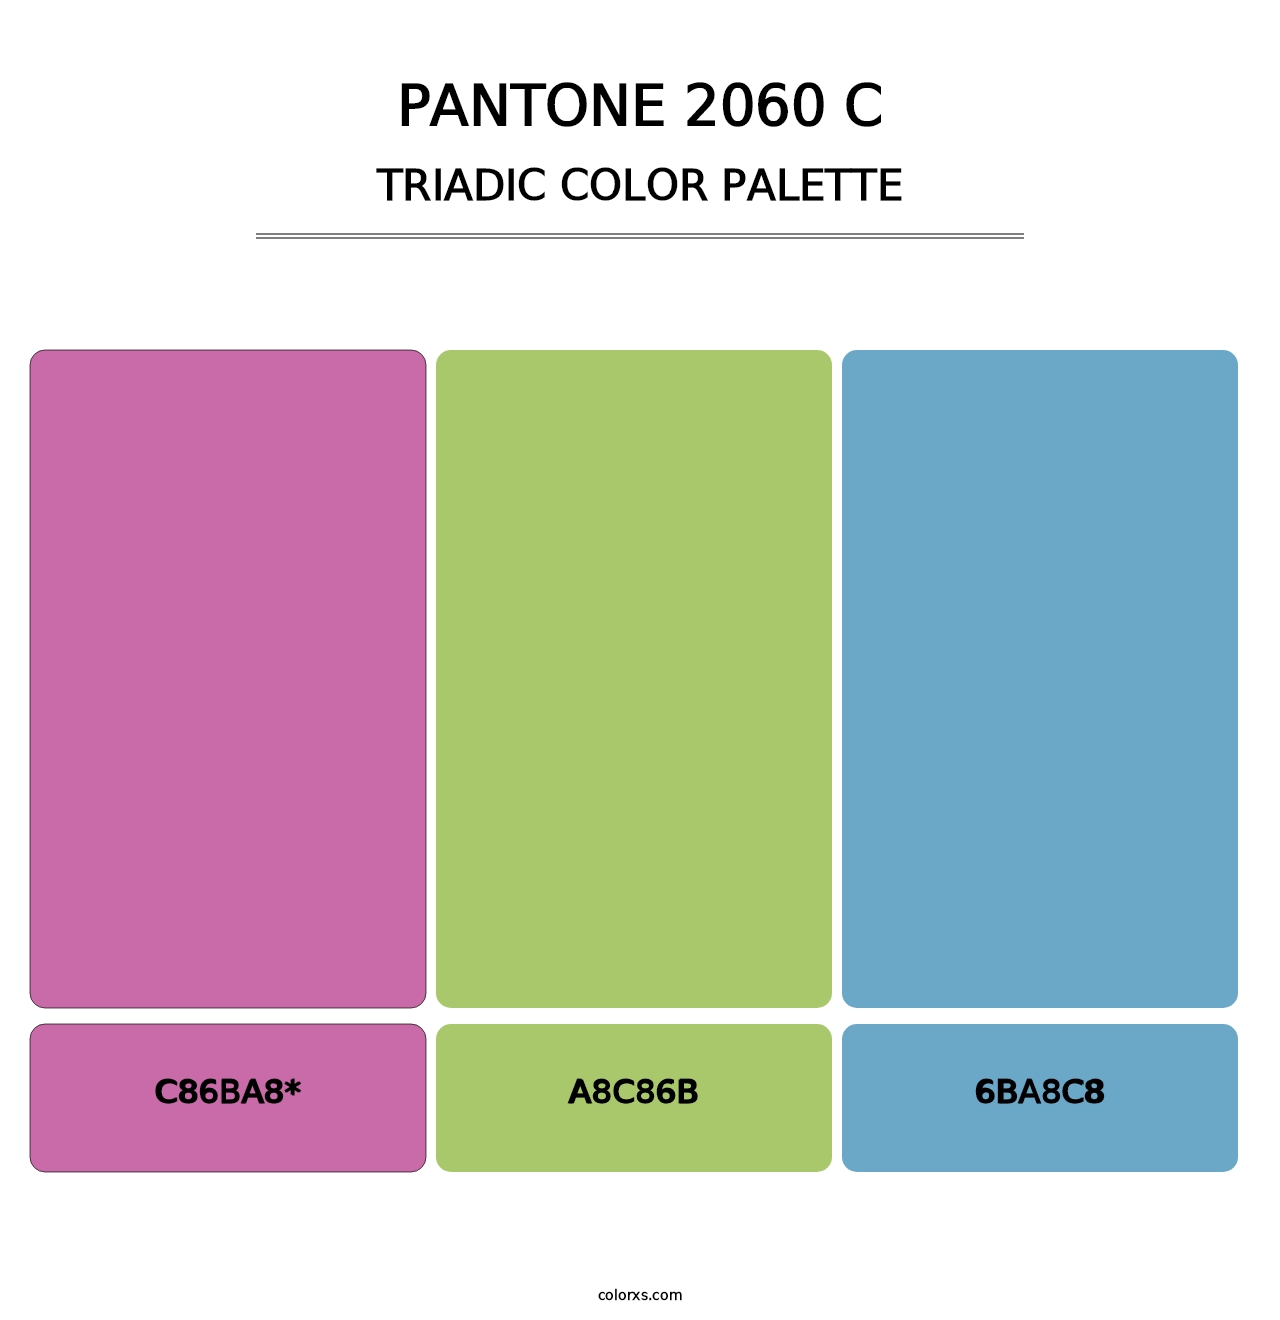 PANTONE 2060 C - Triadic Color Palette